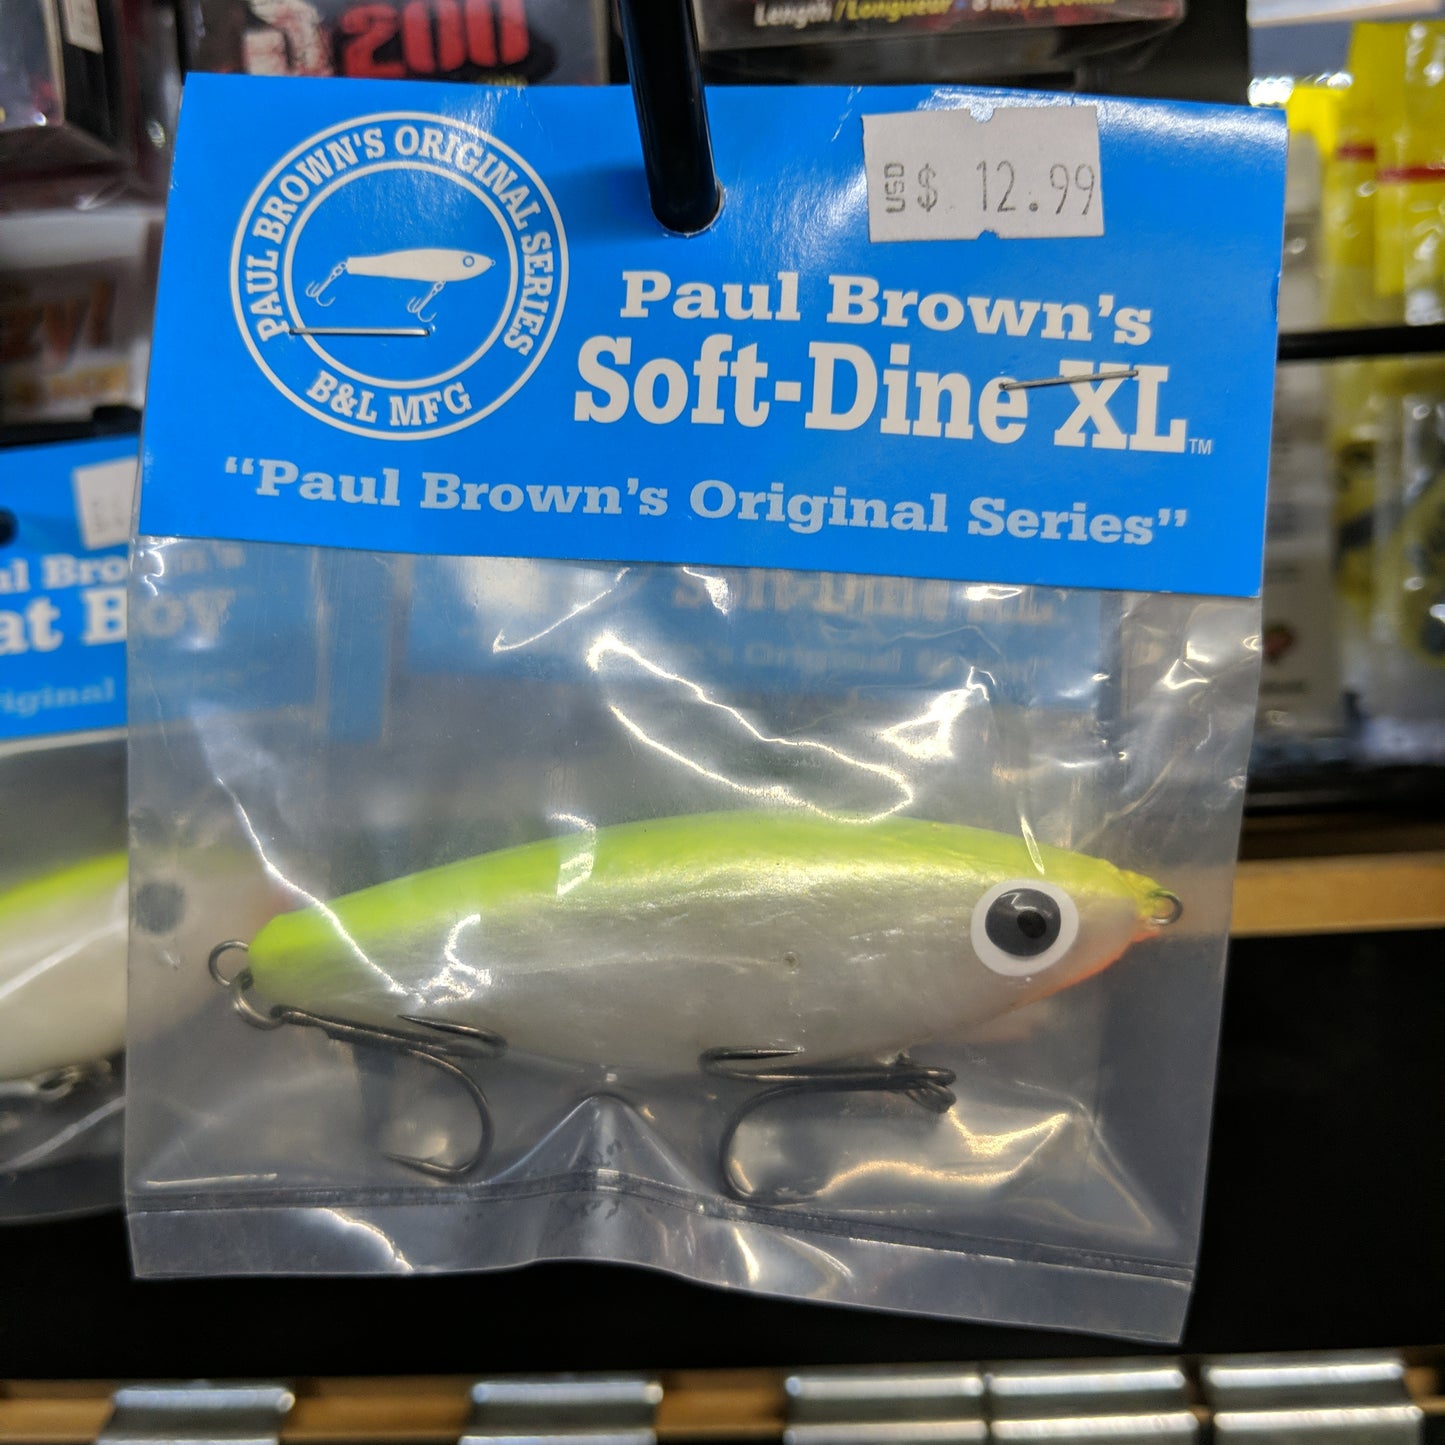 Paul Brown's Paul Brown Sdxl